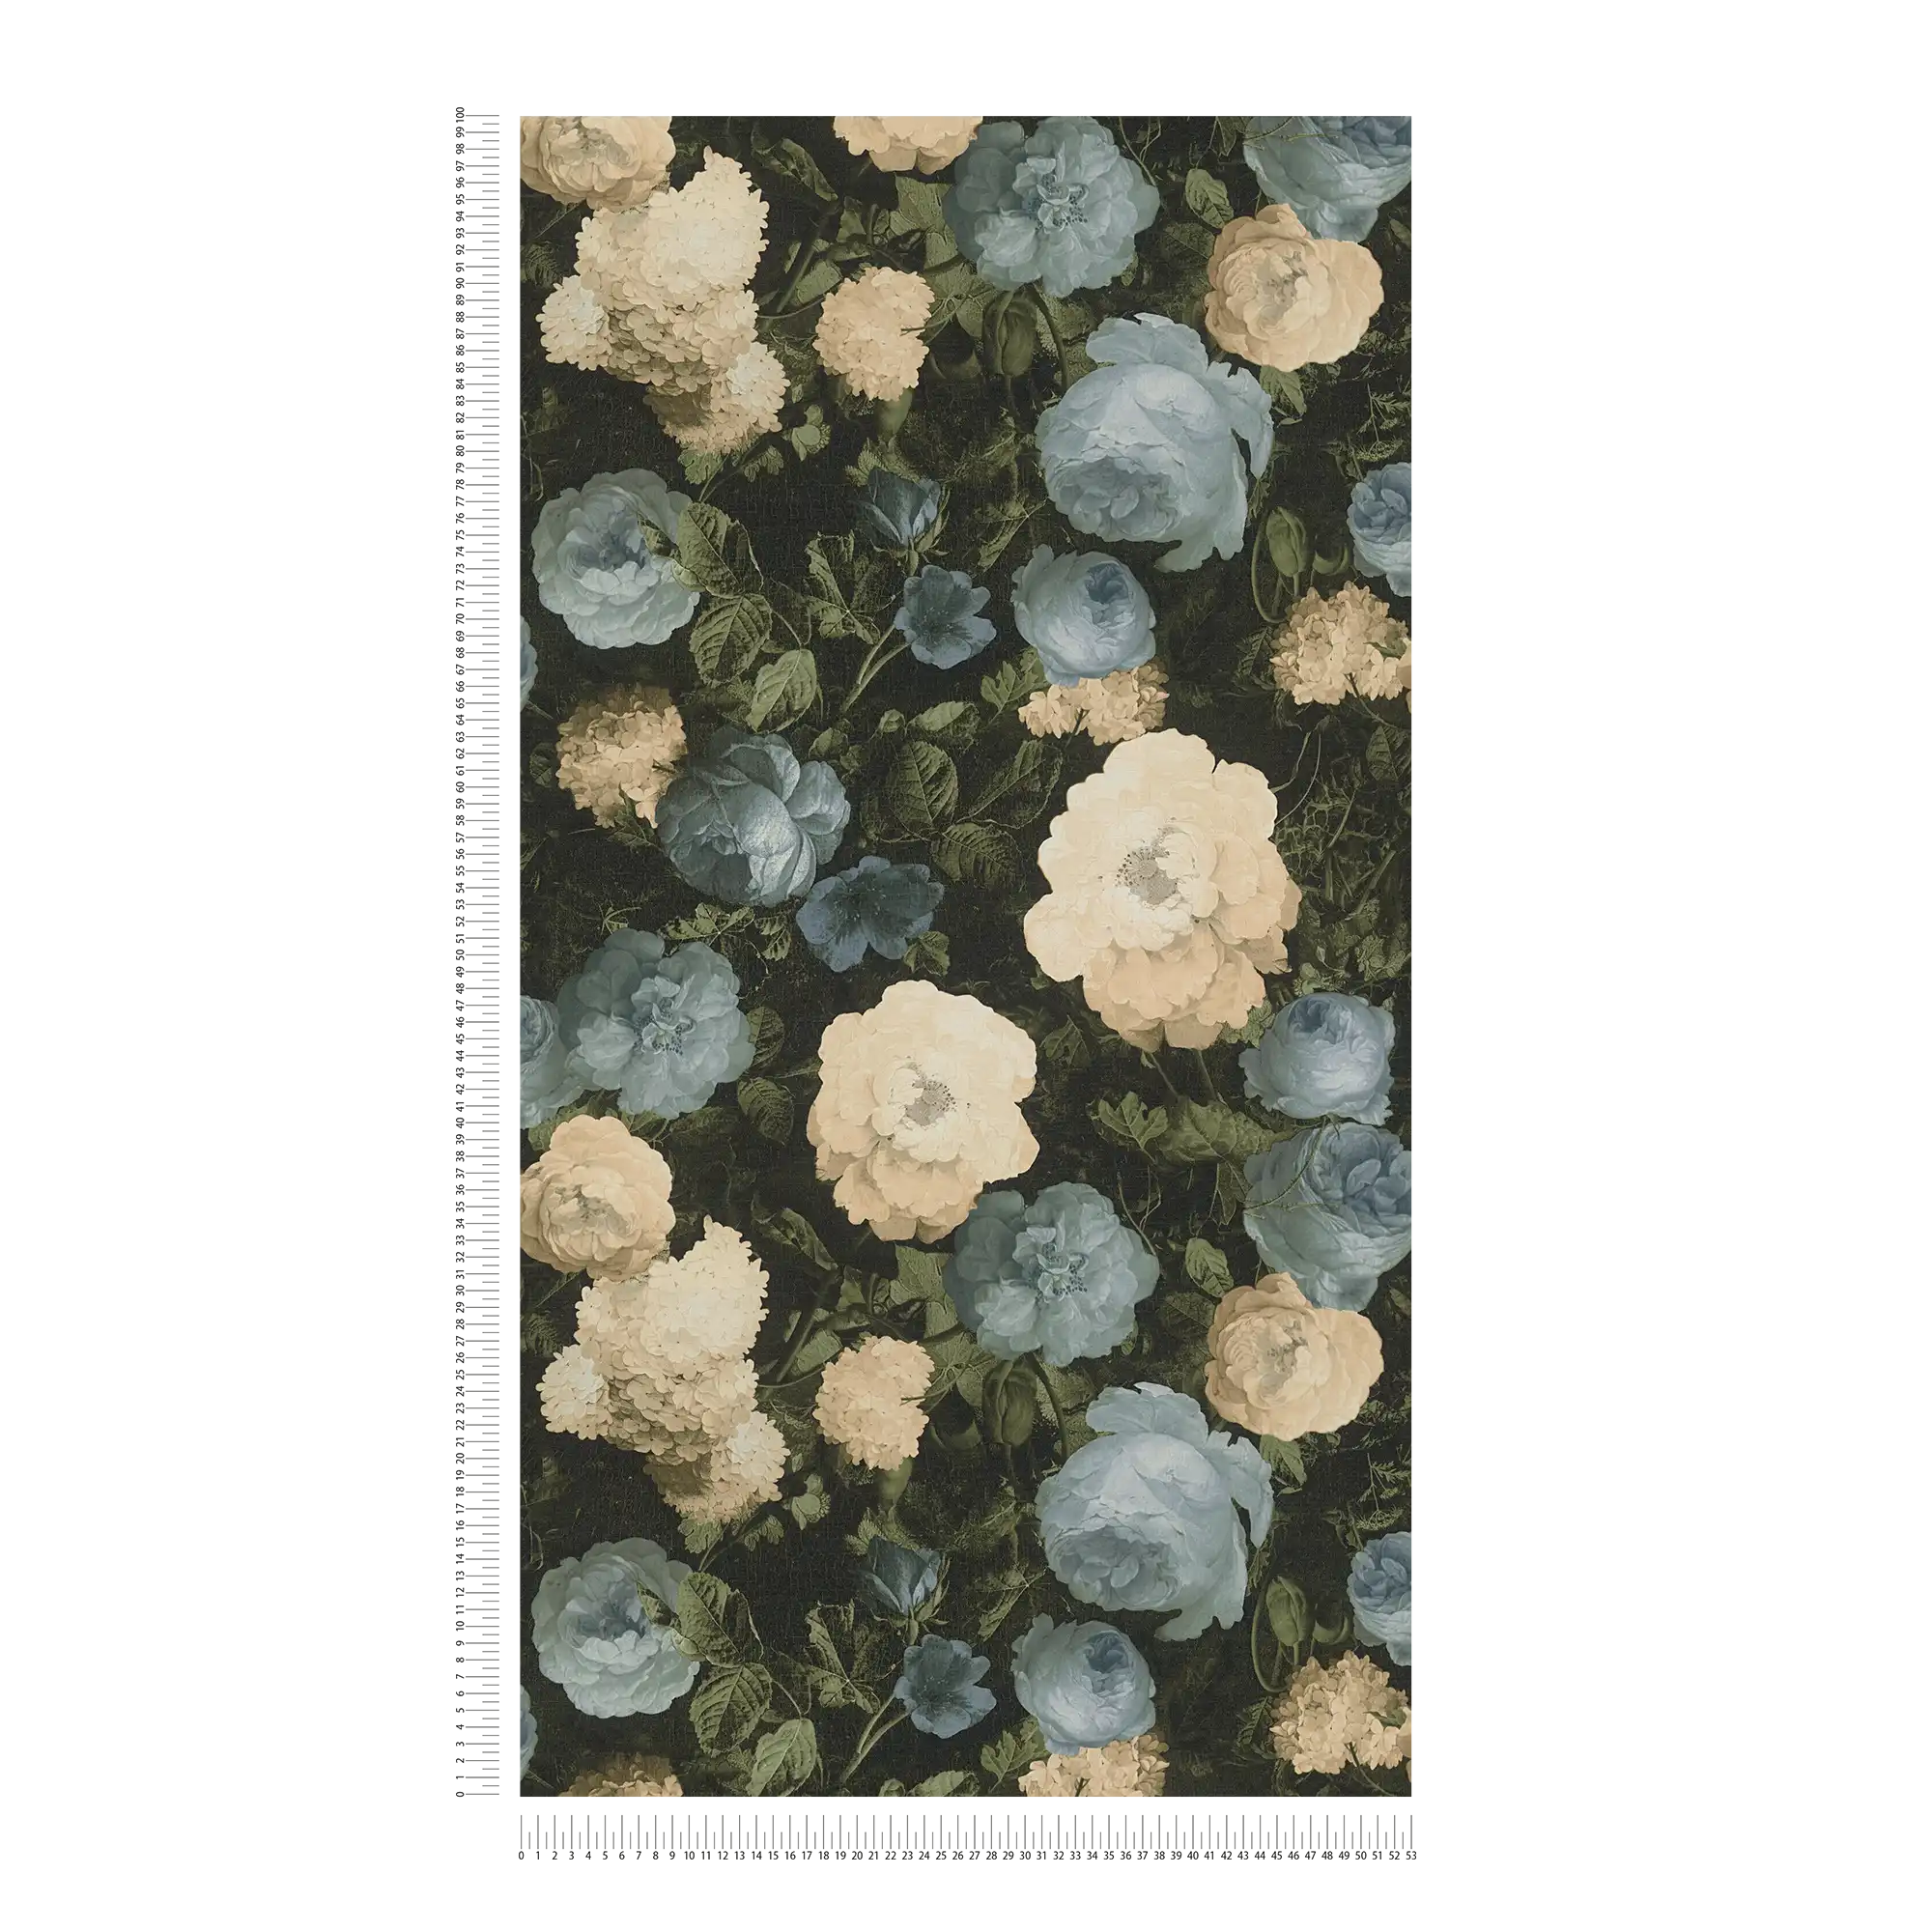             Rozenbehang, klassiek bloemenpatroon - blauw, groen, crème
        